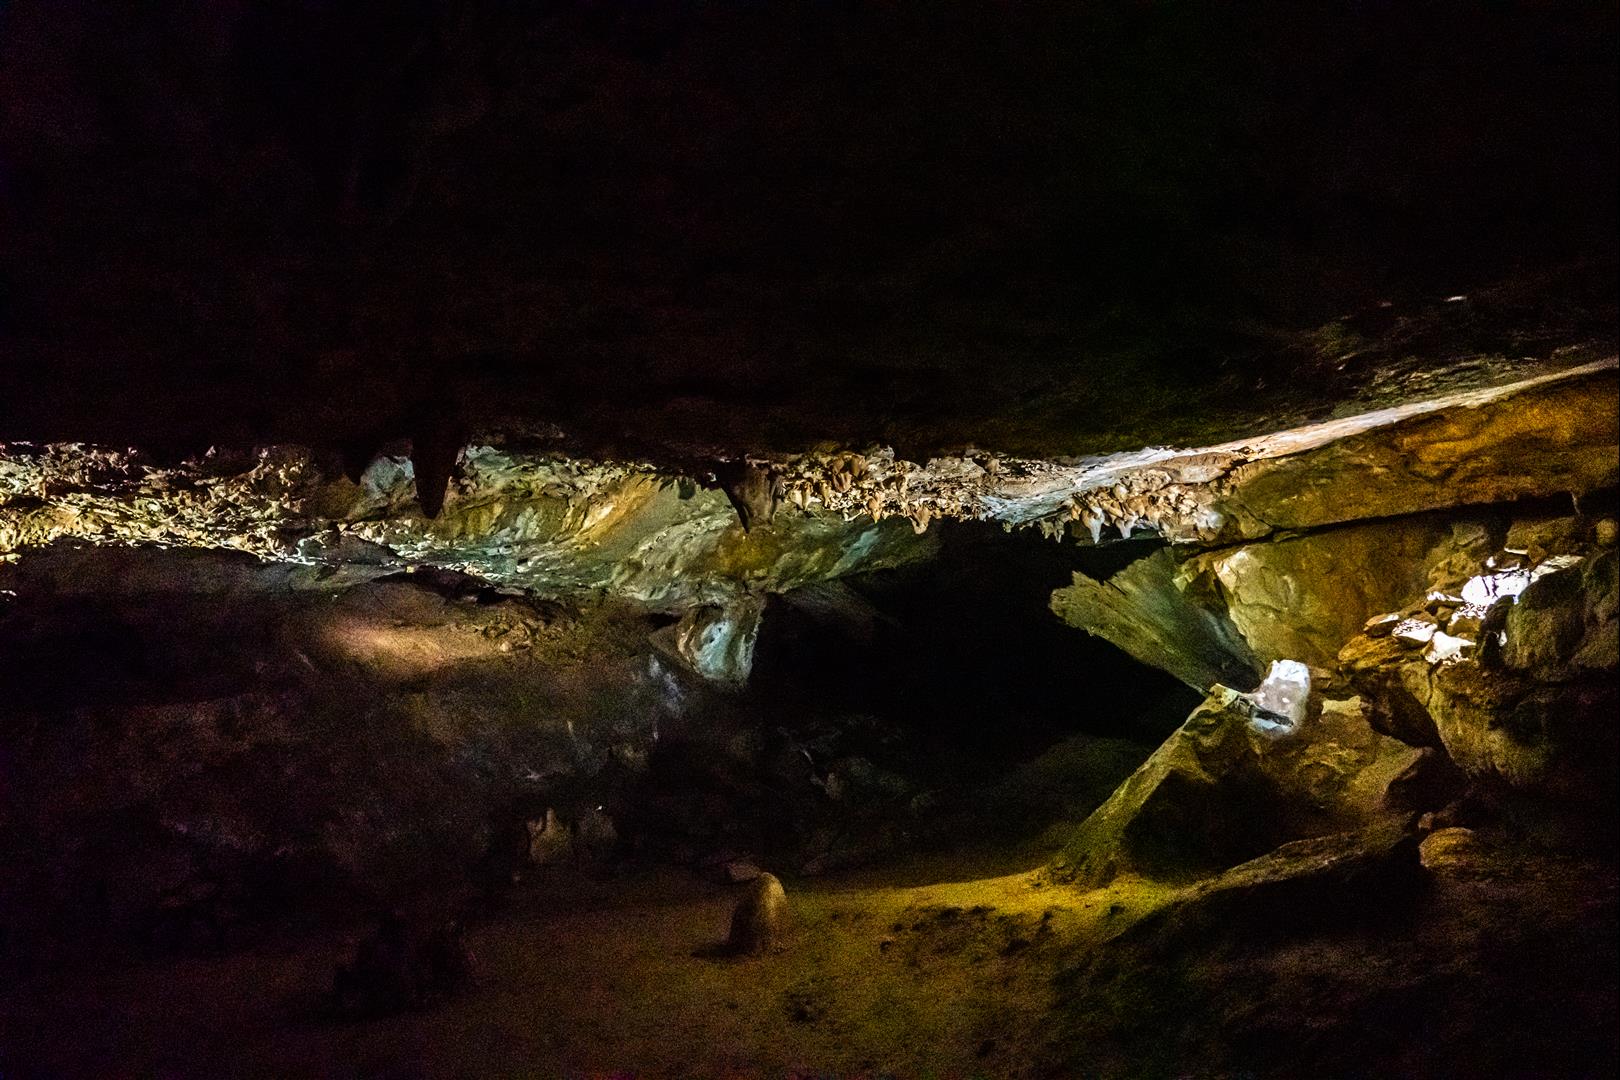 [奧地利/哈斯塔特] 達克斯坦冰洞 EISHOHLE - 熊洞穴、冰柱光雕秀、音樂懸索橋